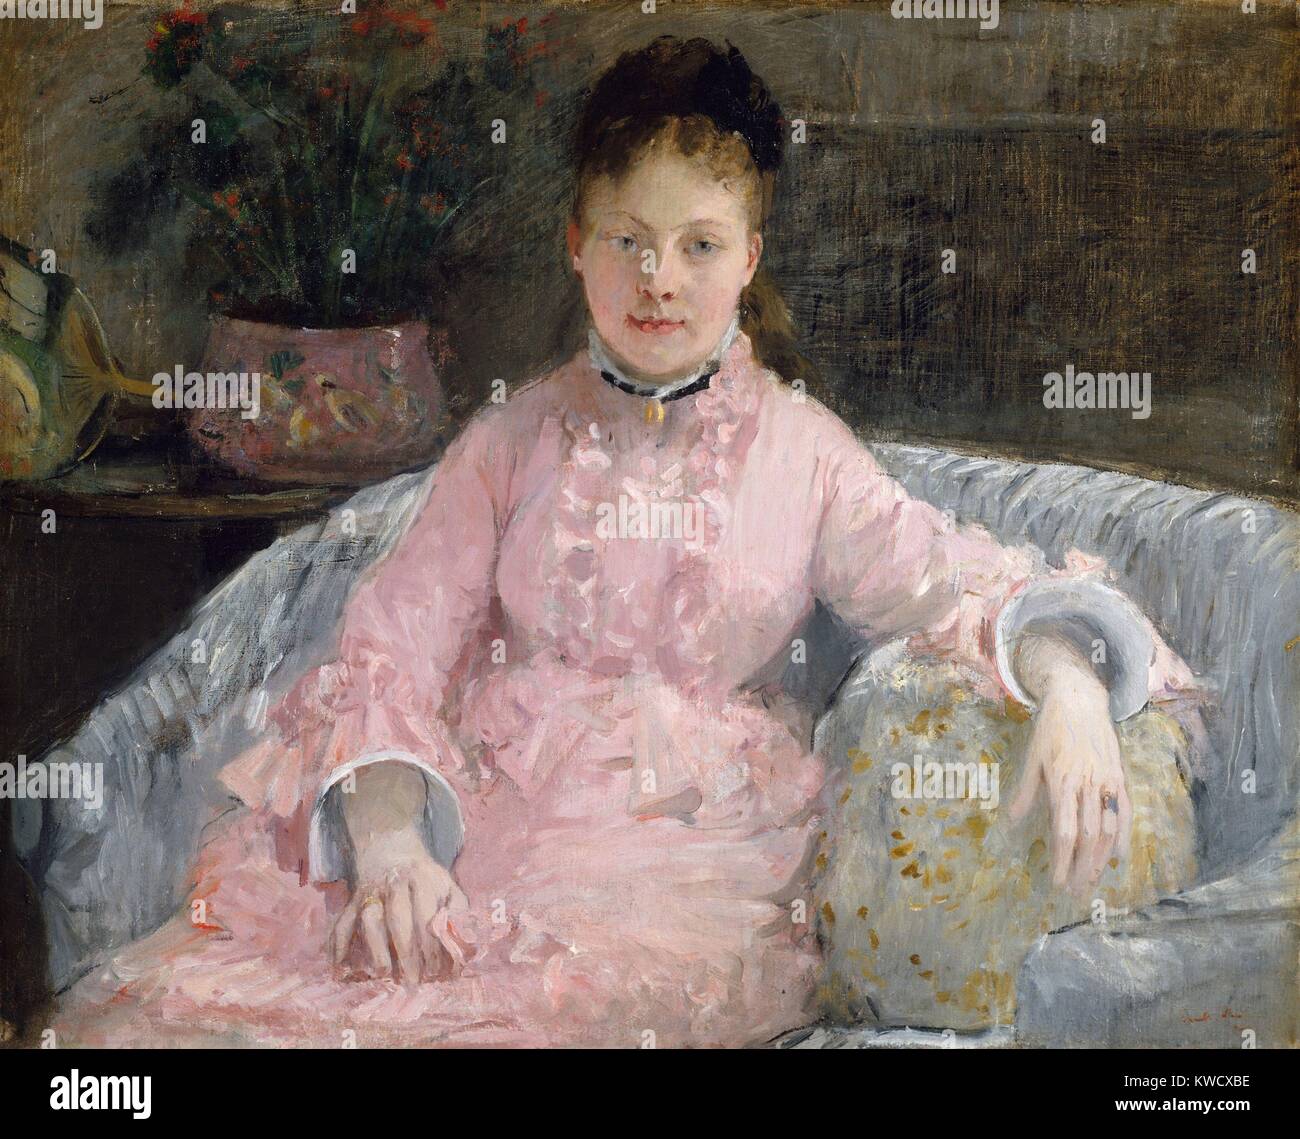 L'abito rosa, da Berthe Morisot, 1870, impressionista francese pittura, olio su tela. Morisot ha iniziato a studiare pittura all'età 16 ed è stato influenzato da Corot a dipingere paesaggi en plein air nei primi 1860s. Questa tela è stata dipinta con due anni nella sua amicizia artistica con Manet, quando ha adottato il stile impressionista (BSLOC 2017 3 125) Foto Stock